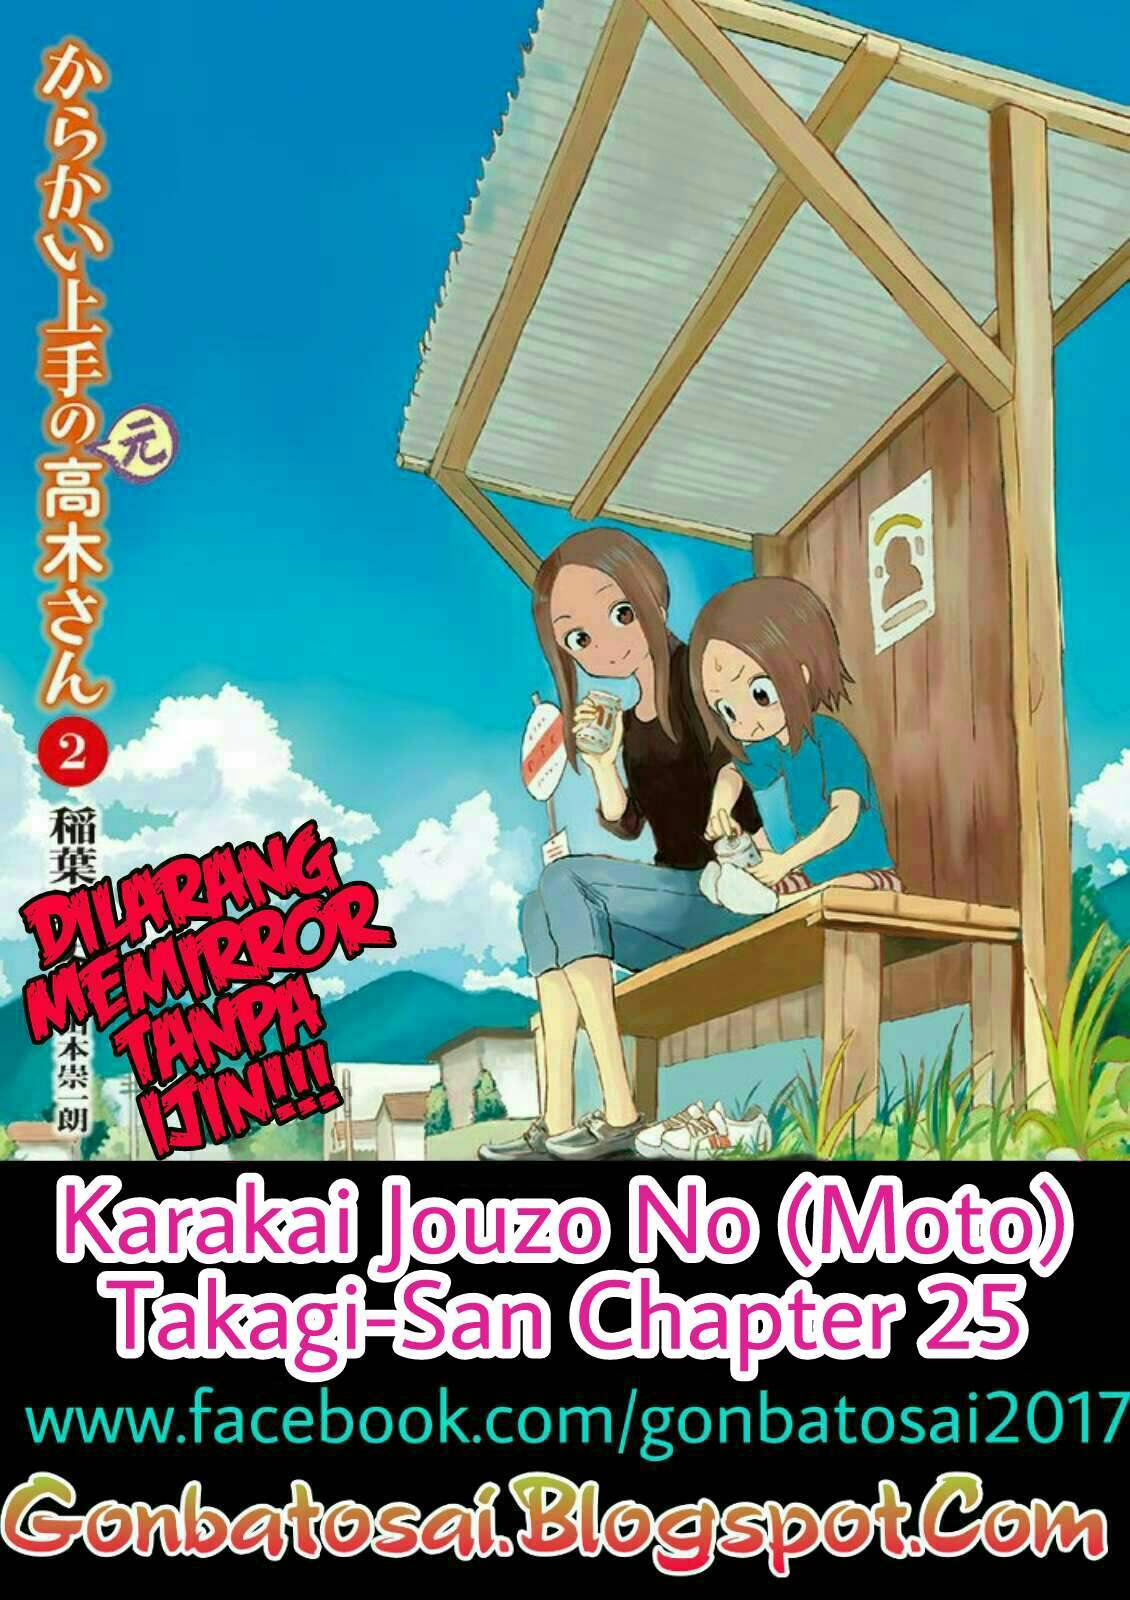 Karakai Jouzu no (Moto) Takagi-san Chapter 25